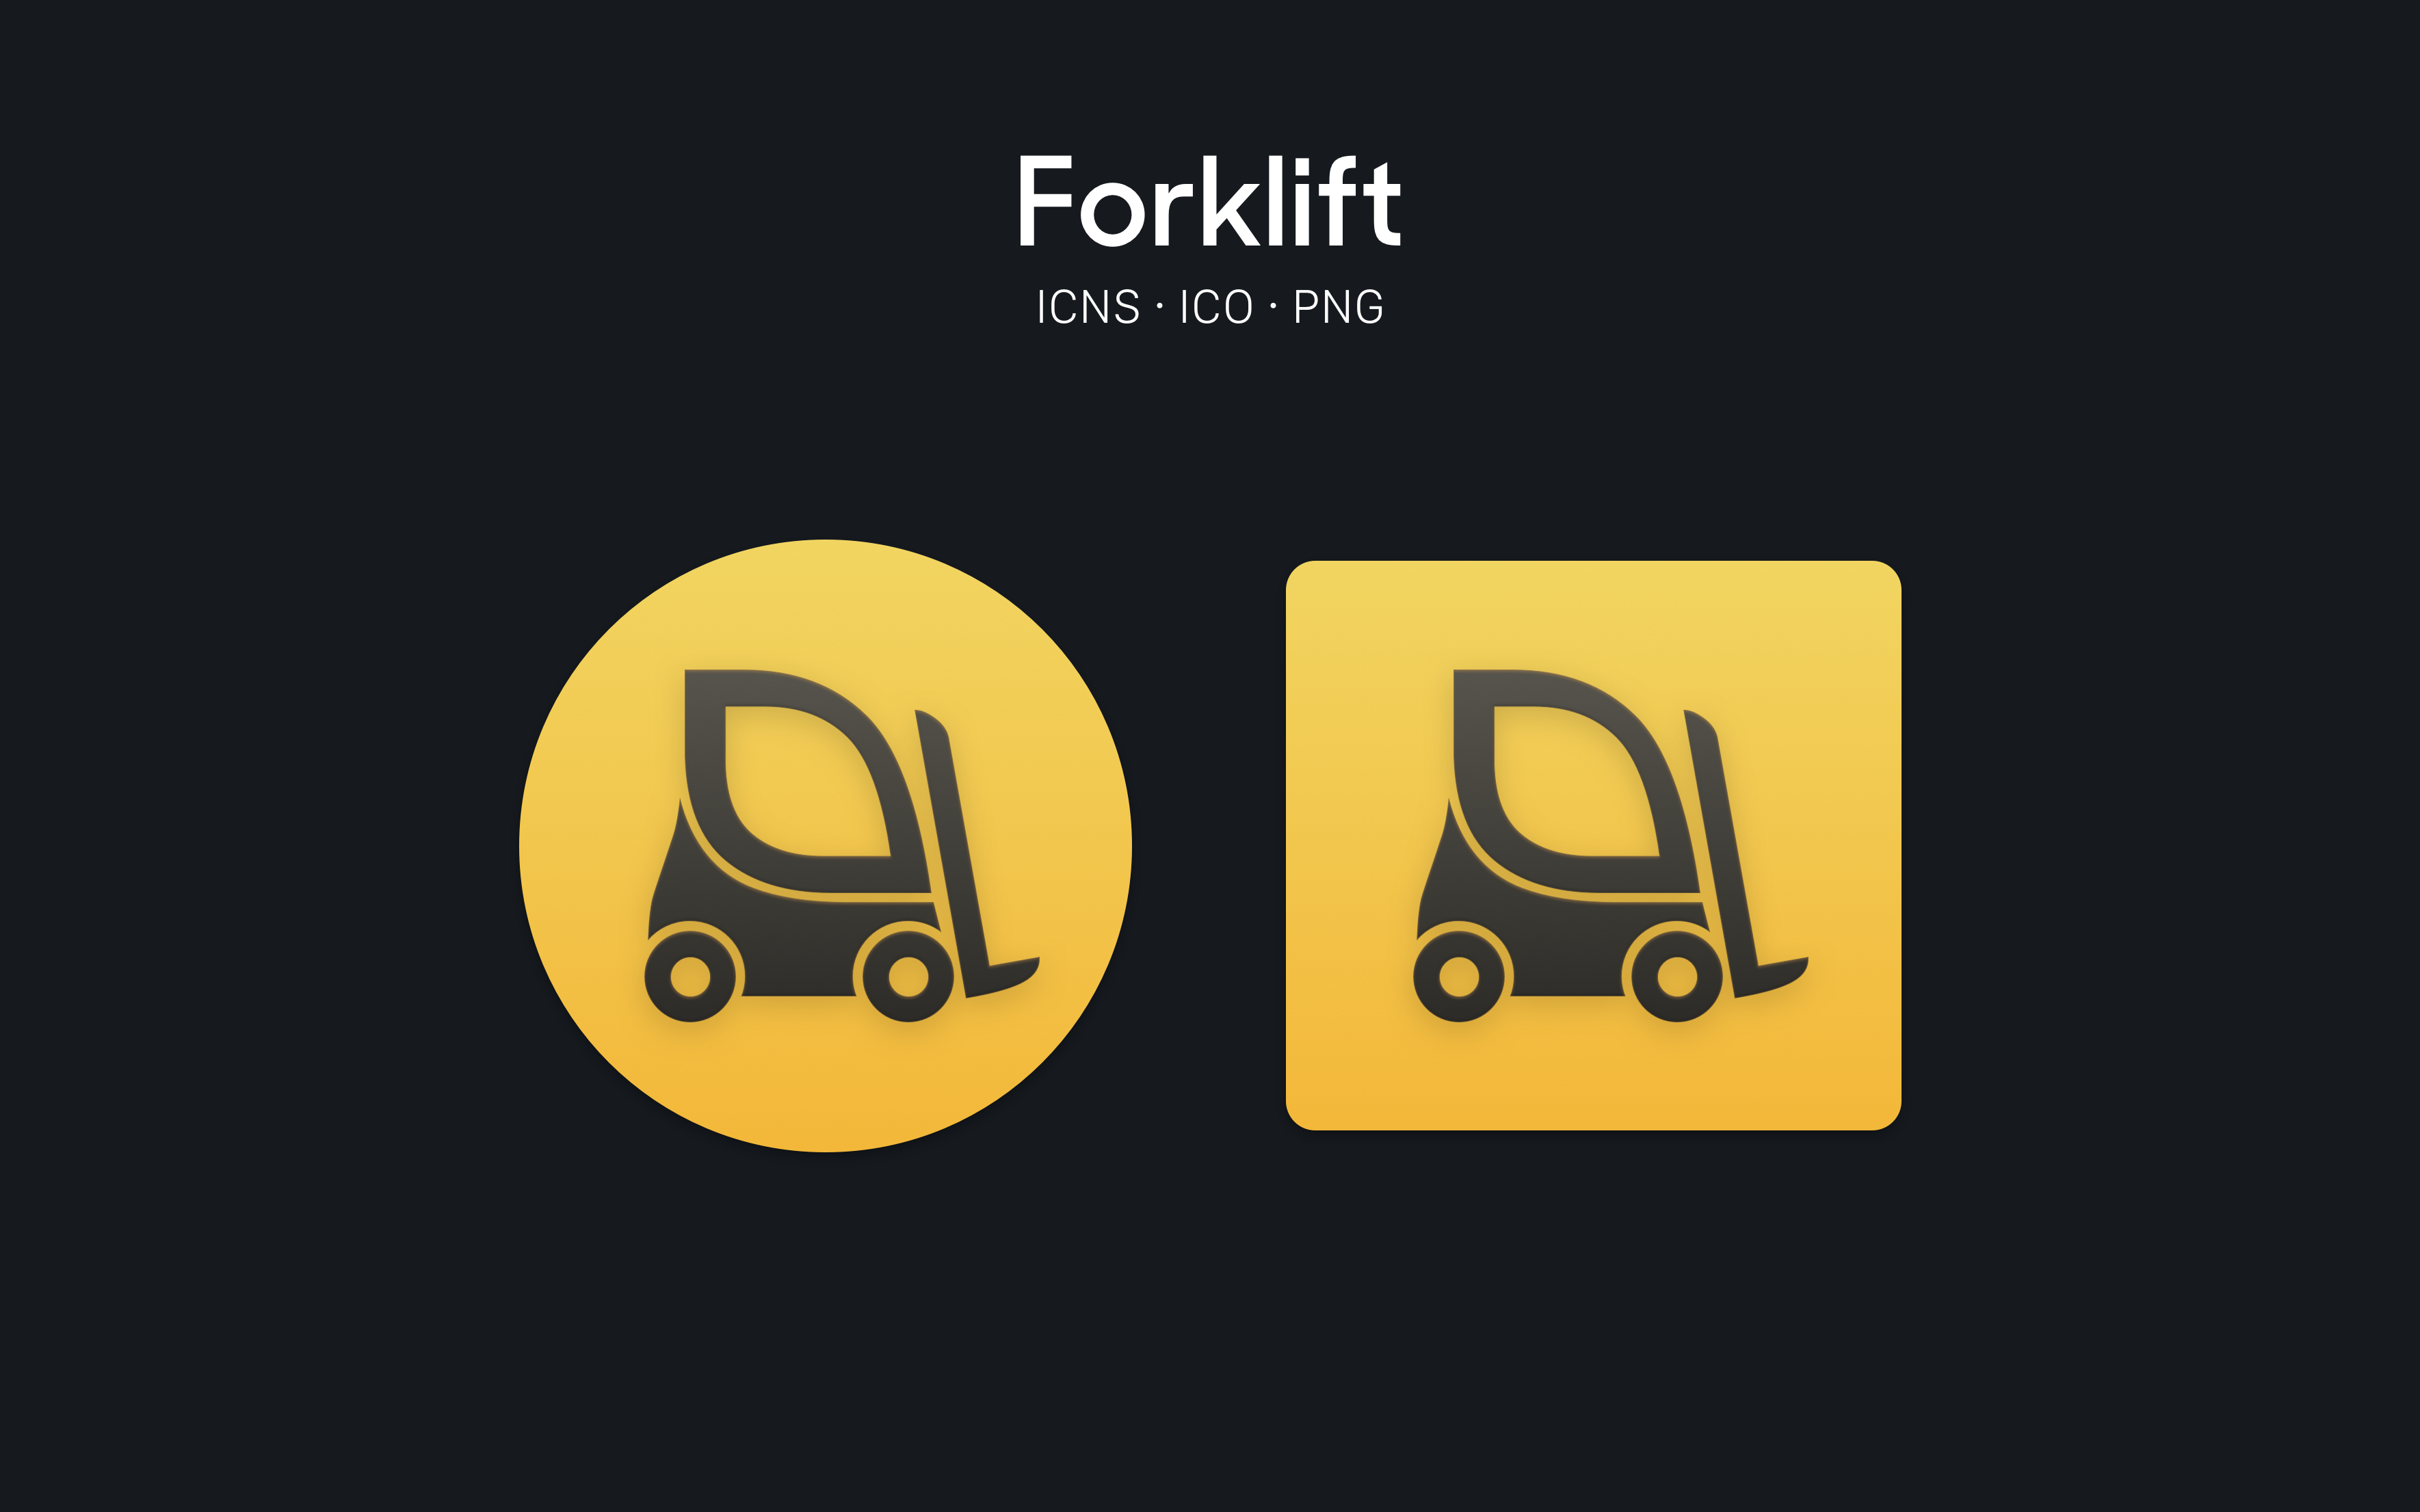 Forklift For Macos By Octaviotti On Deviantart